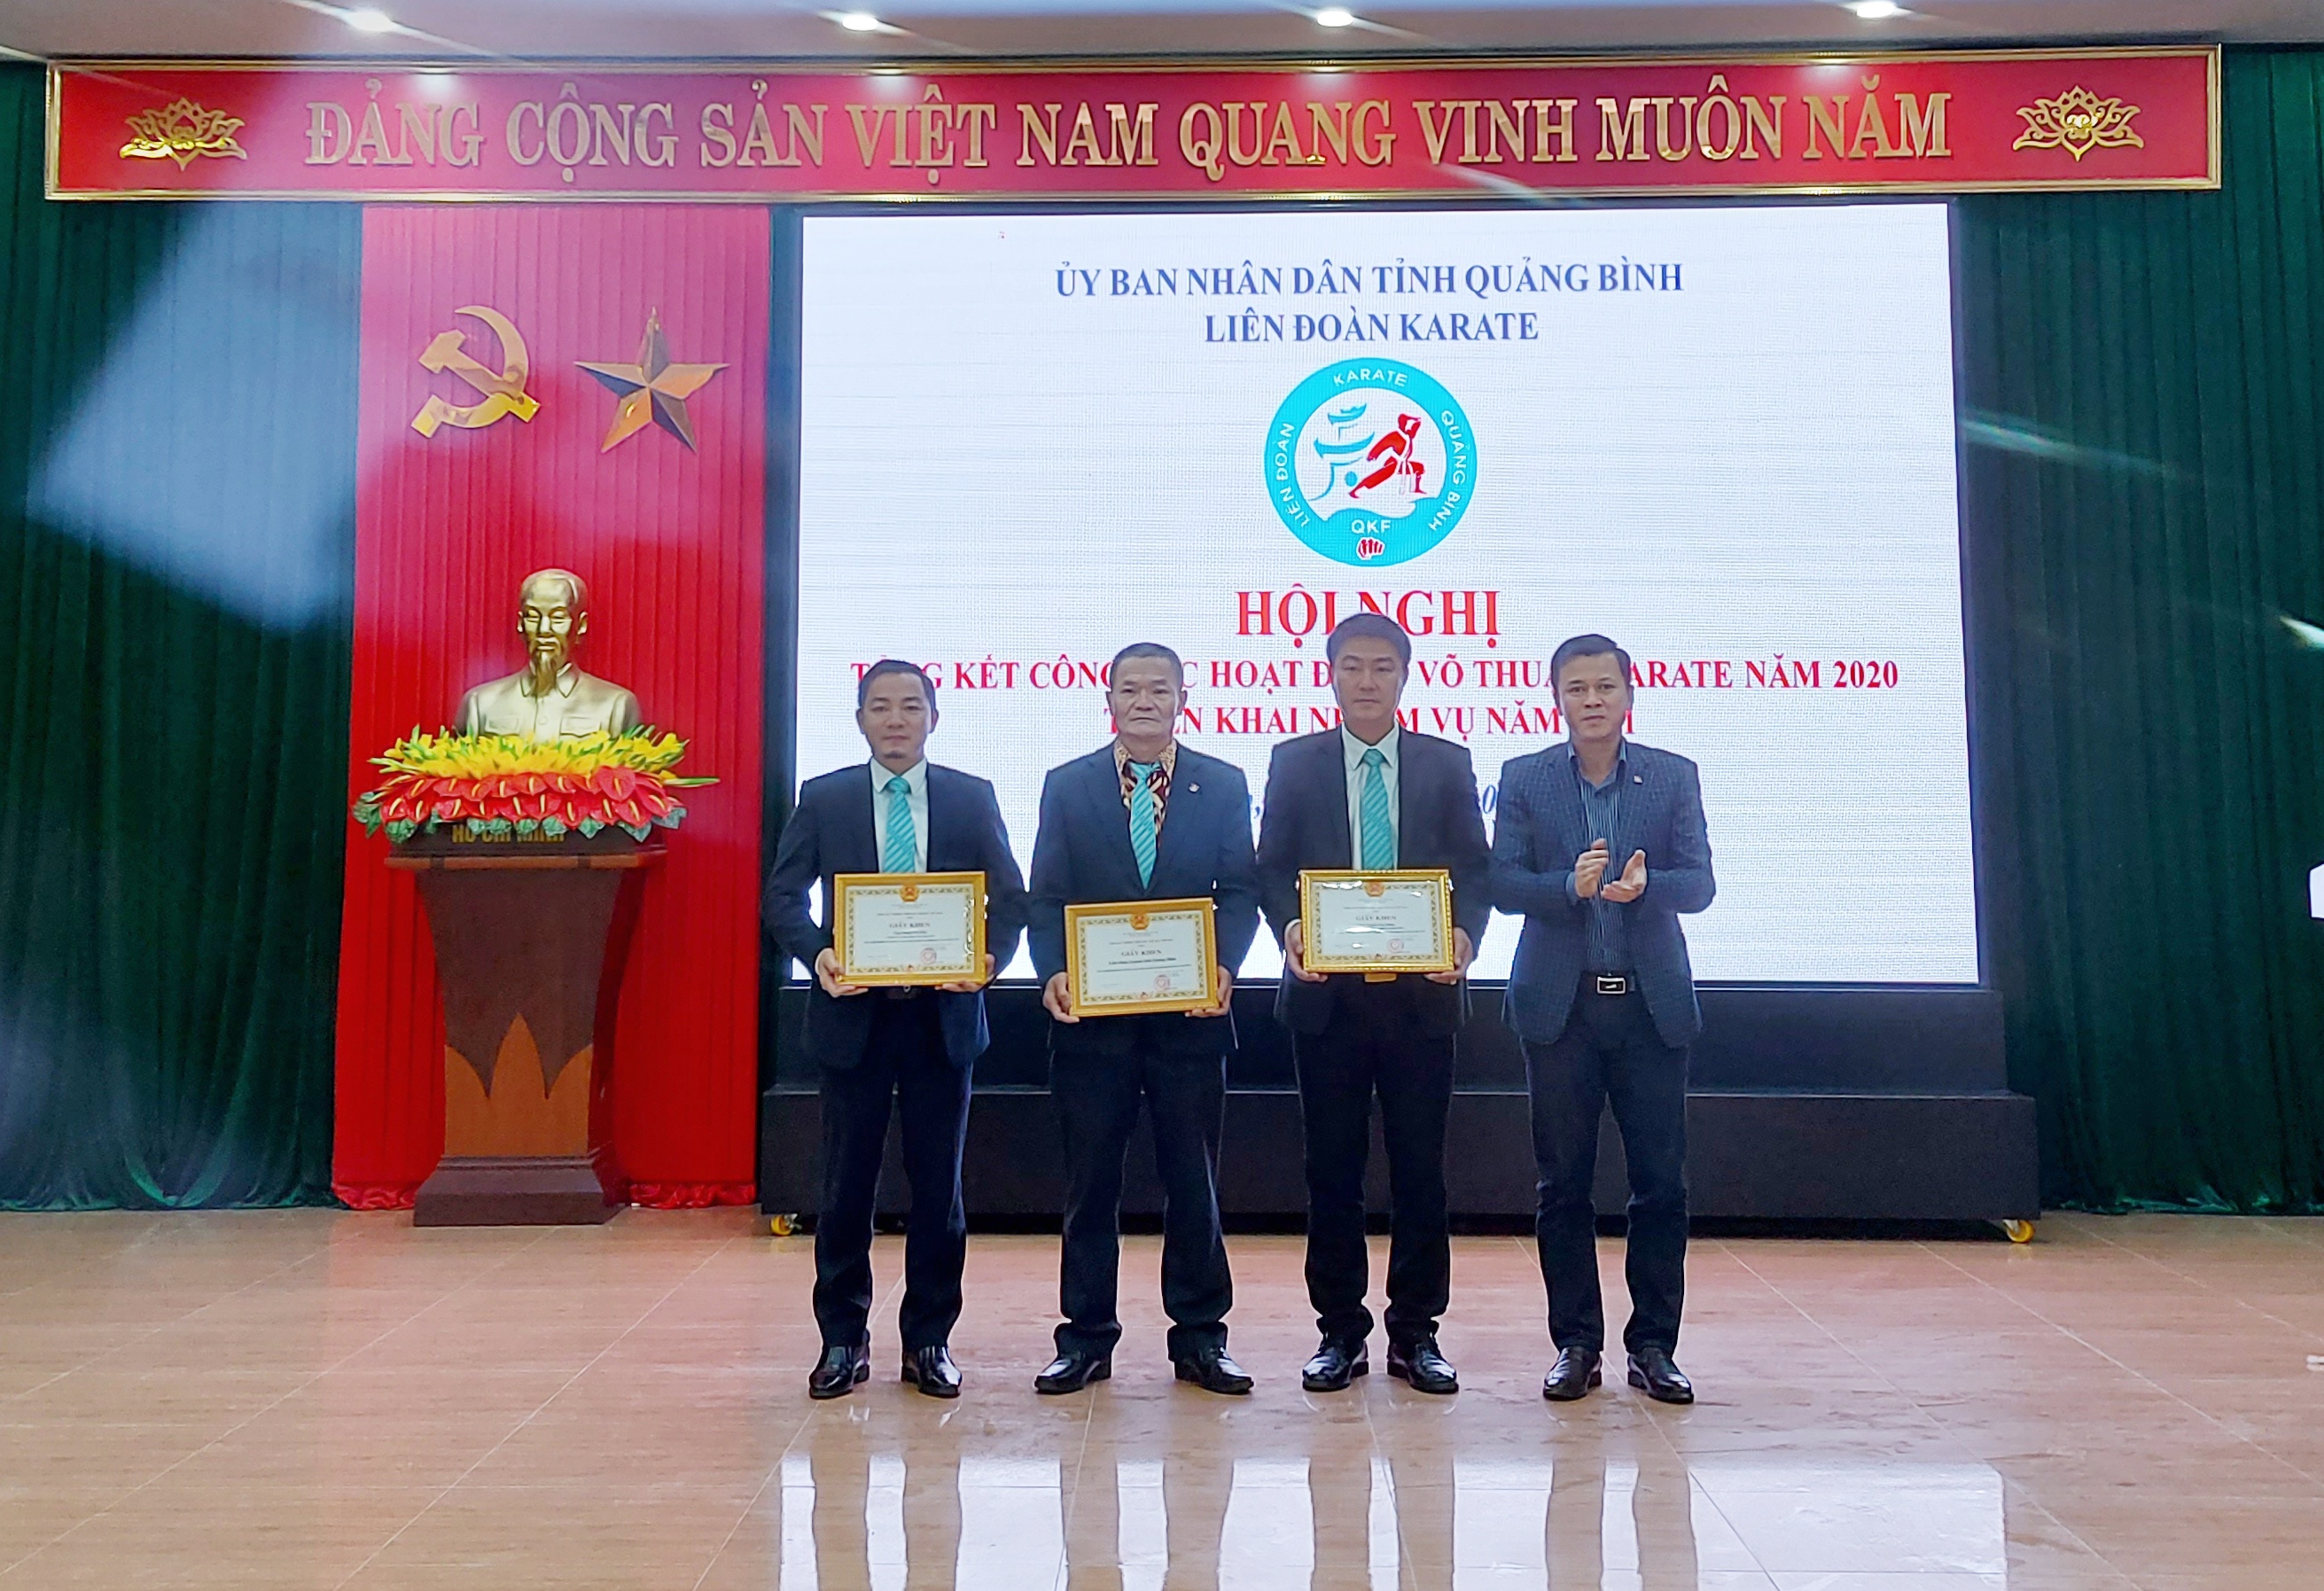 Các tập thể và cá nhân của Liên đoàn Karate Quảng Bình nhận giấy khen của Tổng cục TDTT.